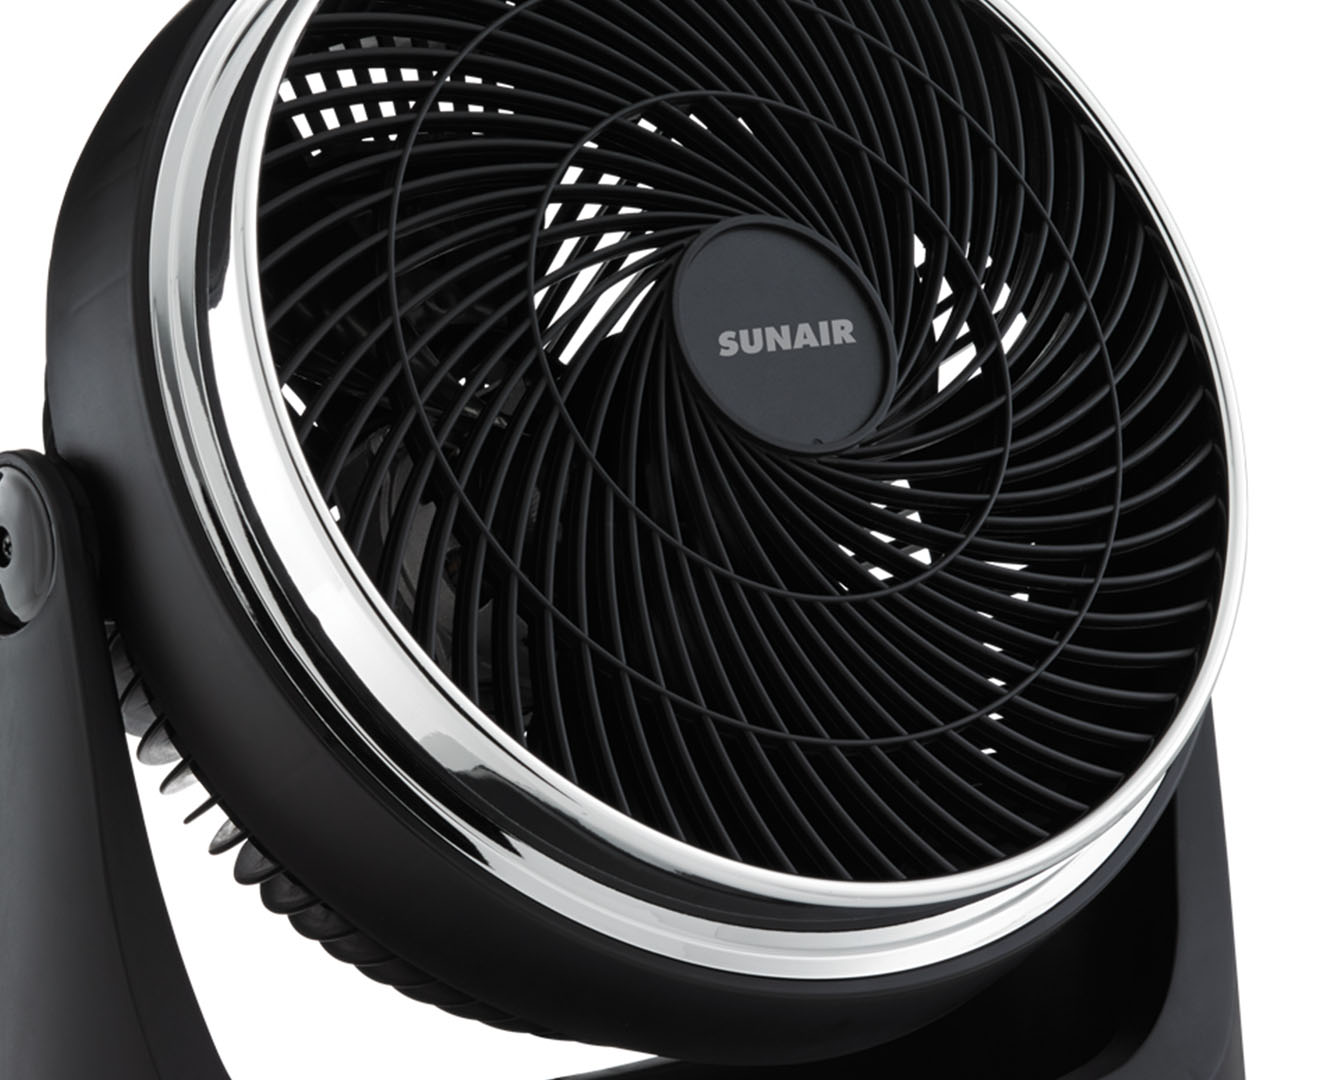 Sunair 30cm High Turbo Fan - Black | Catch.com.au